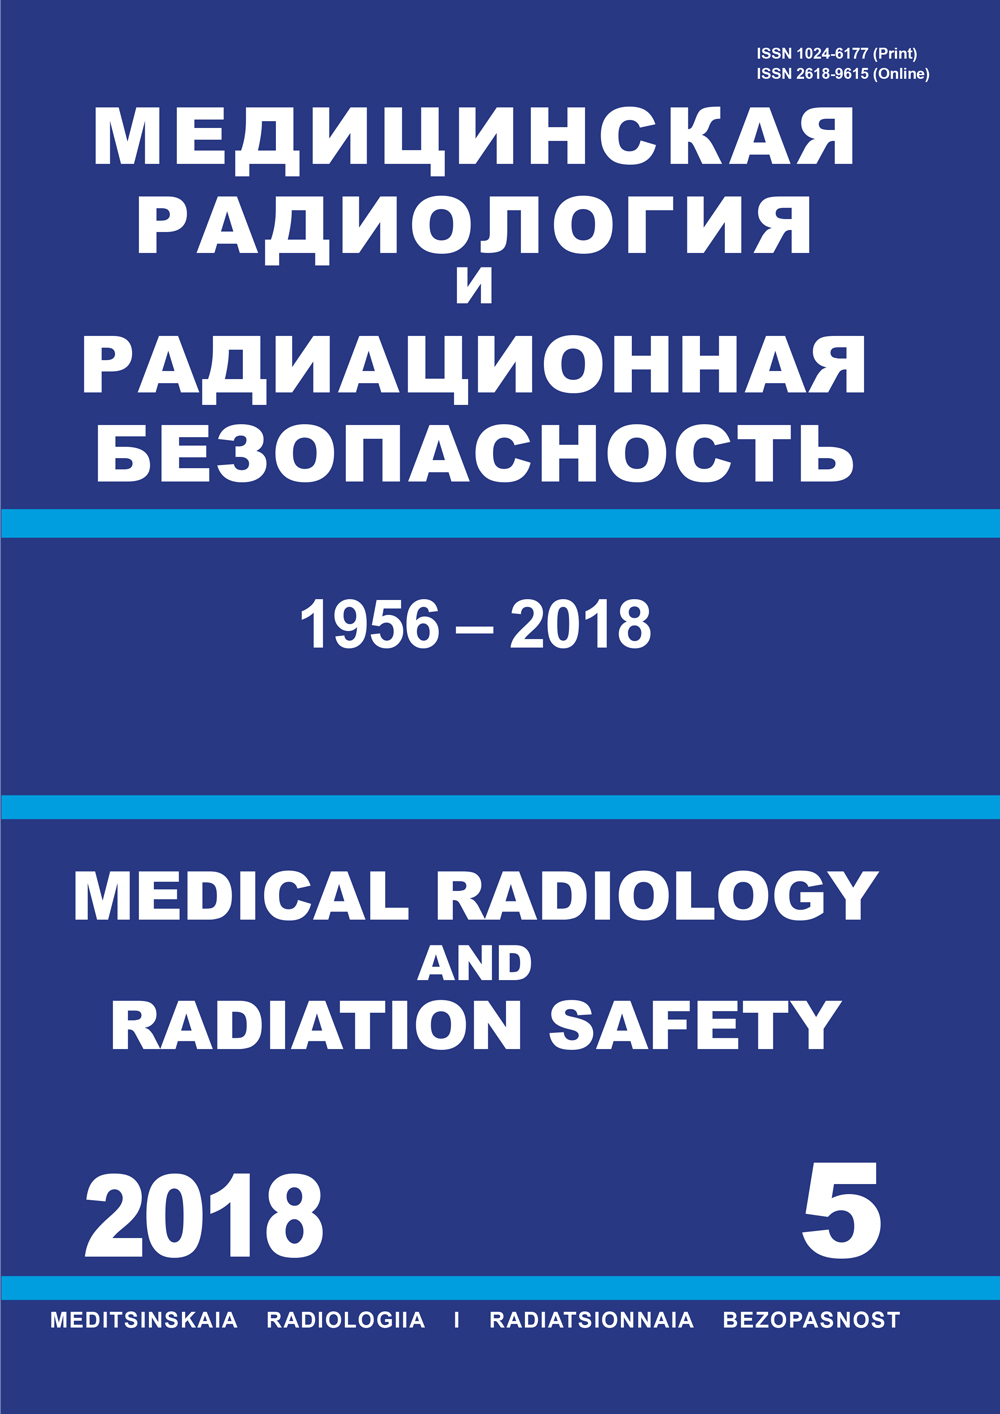             Рецензия на книгу А.В. Хмелева «Ядерная медицина: физика, оборудование, технологии». – М.: НИЯУ МИФИ, 2018
    